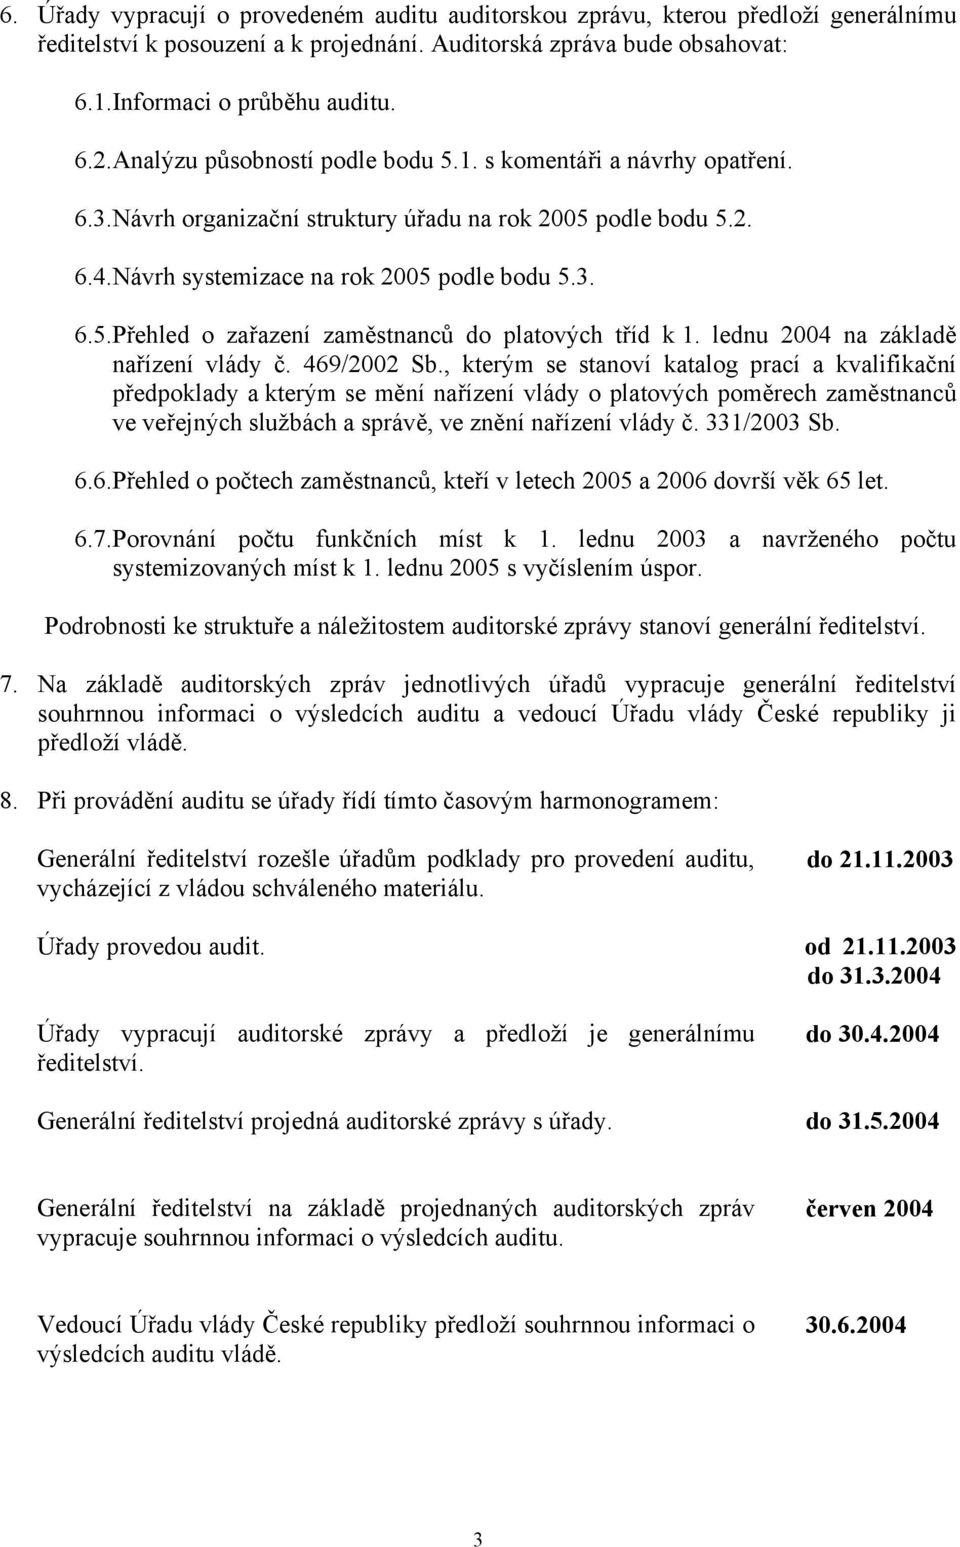 lednu 2004 na základě nařízení vlády č. 469/2002 Sb.